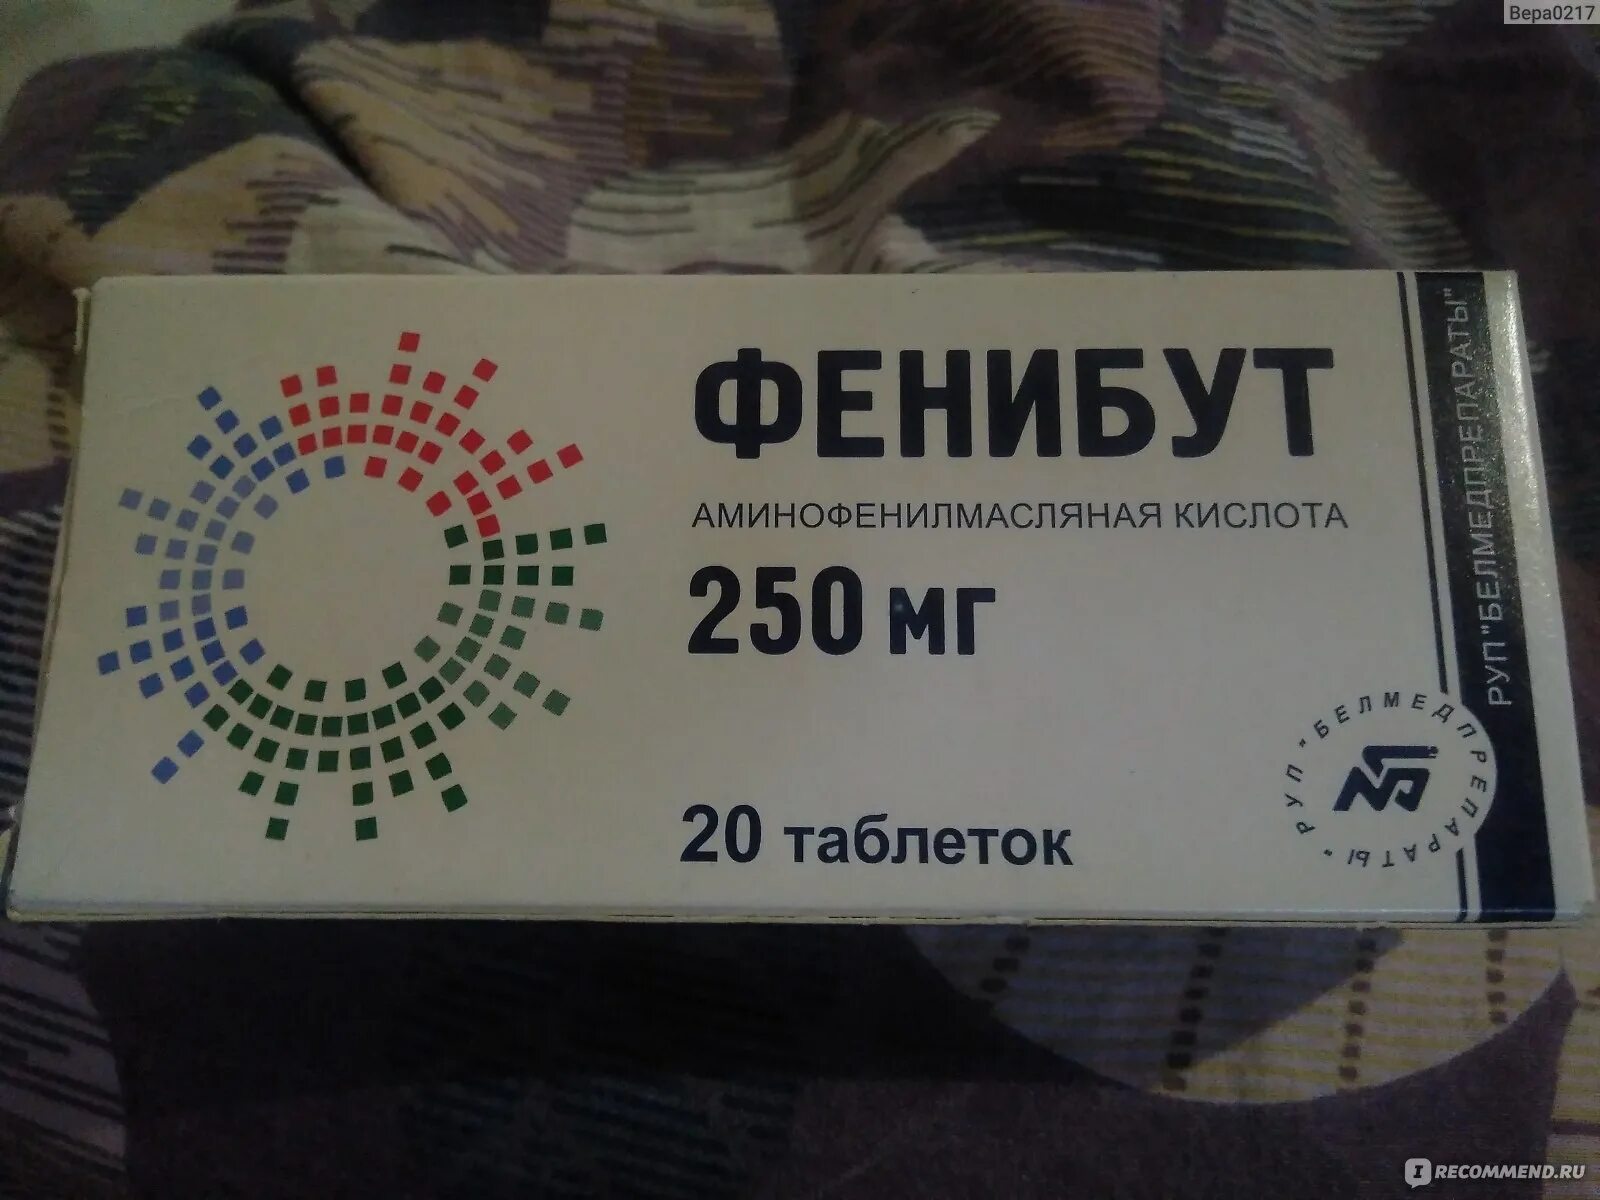 Фенибут купить в интернет с доставкой. Фенибут 250 мг Прибалтика. Фенибут 250 мг латвийский. Фенибут 250 производитель Латвия. Фенибут 250 Прибалтика.